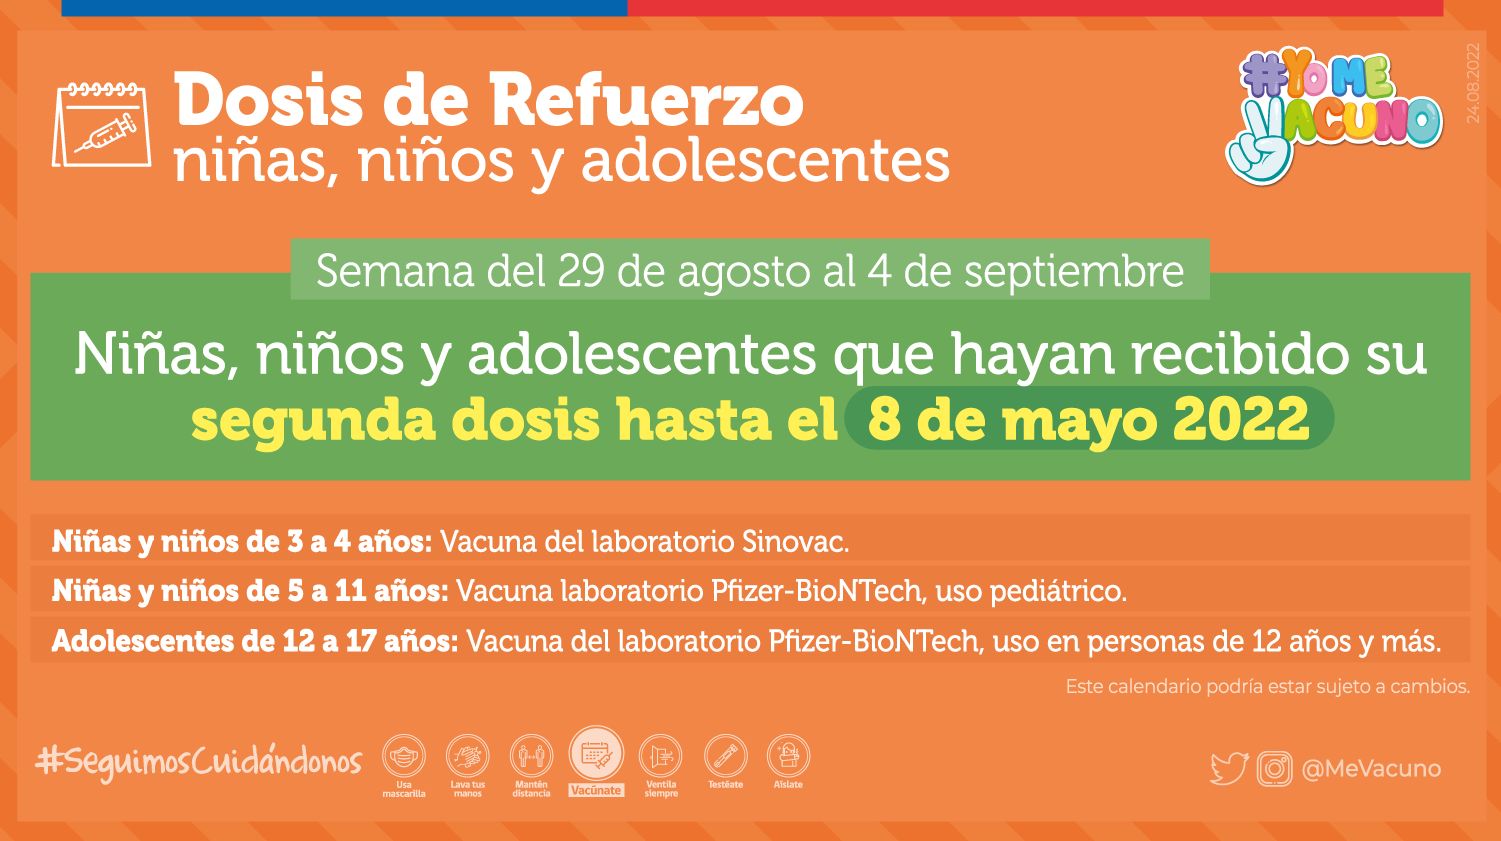 La cuarta dosis de niños, niñas y adolescentes según el calendario de vacunación Covid del 29 de agosto al 04 de septiembre